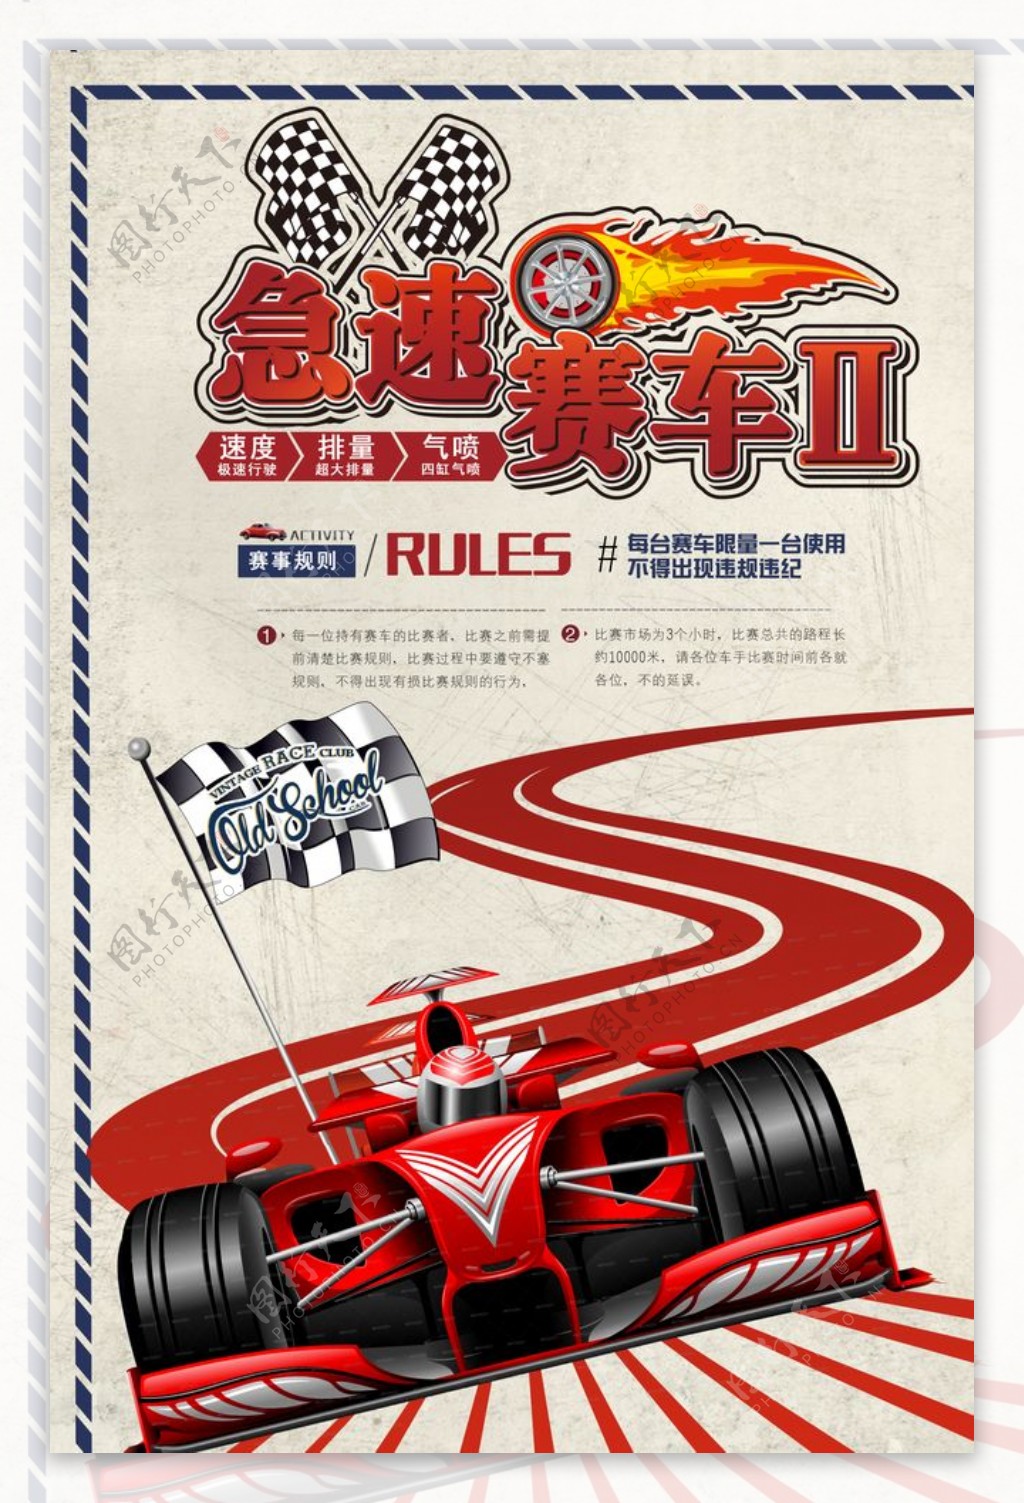 急速赛车竞技比赛宣传海报图片